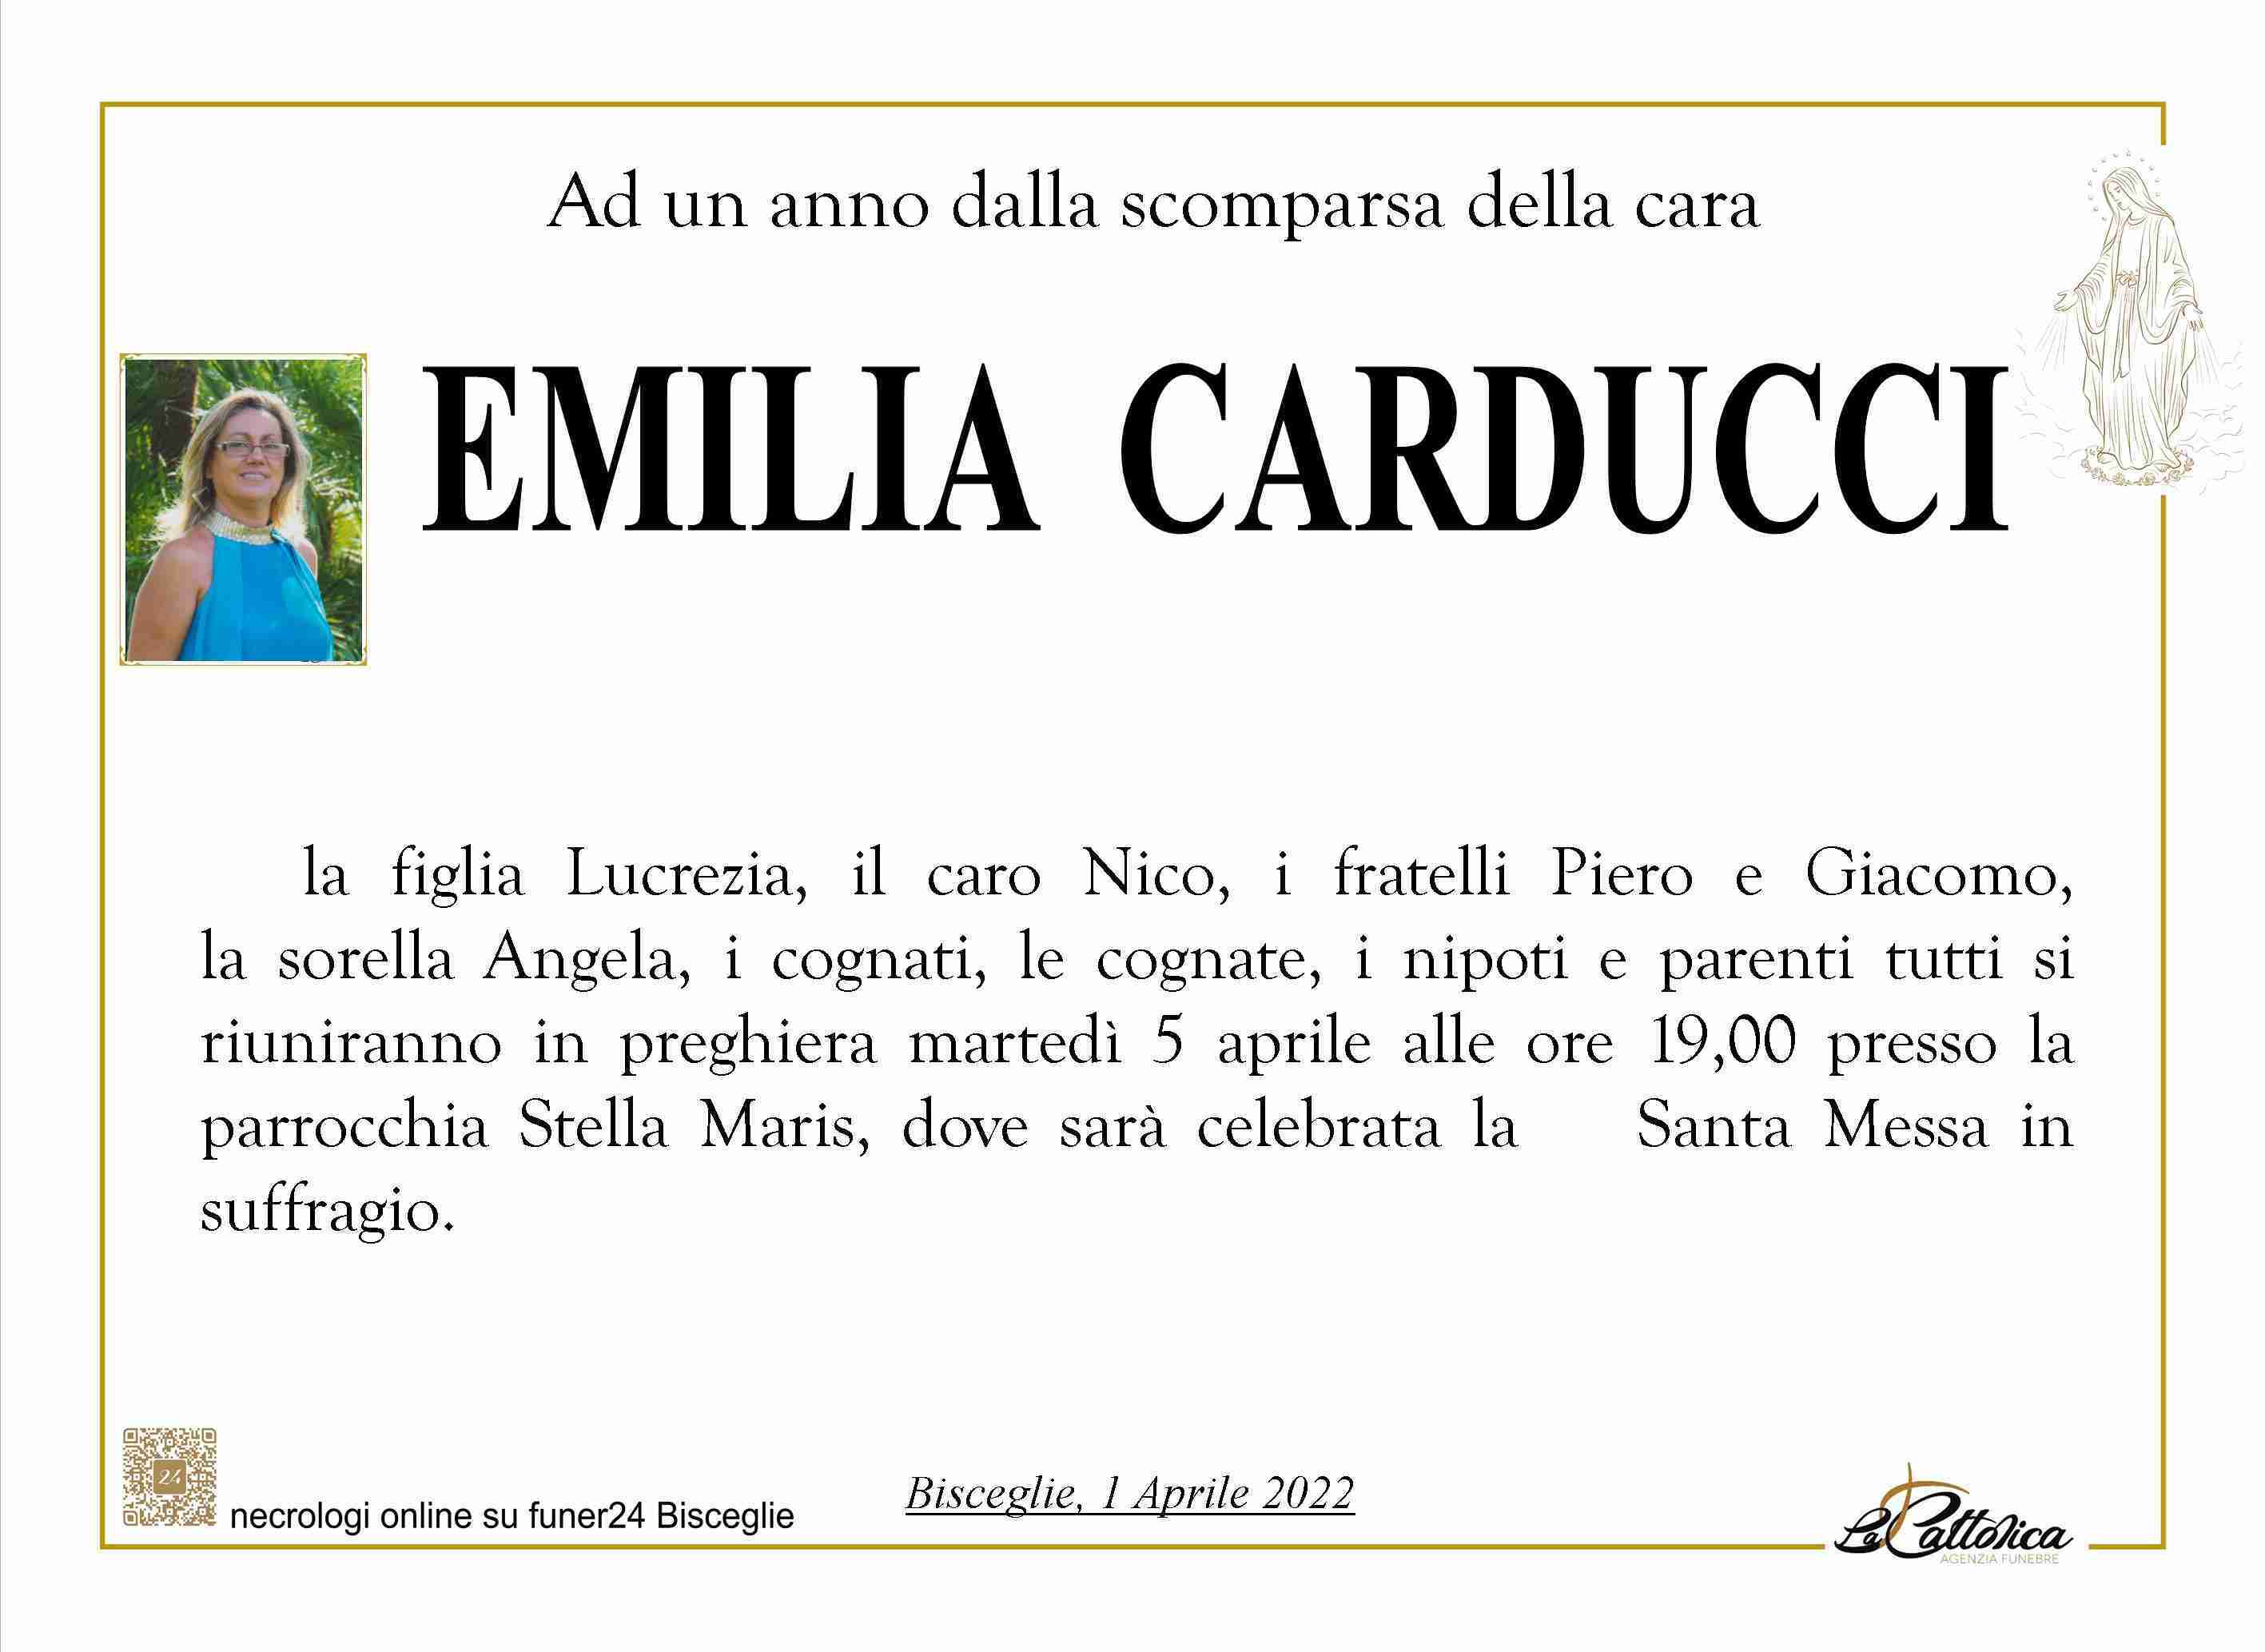 Emilia Carducci